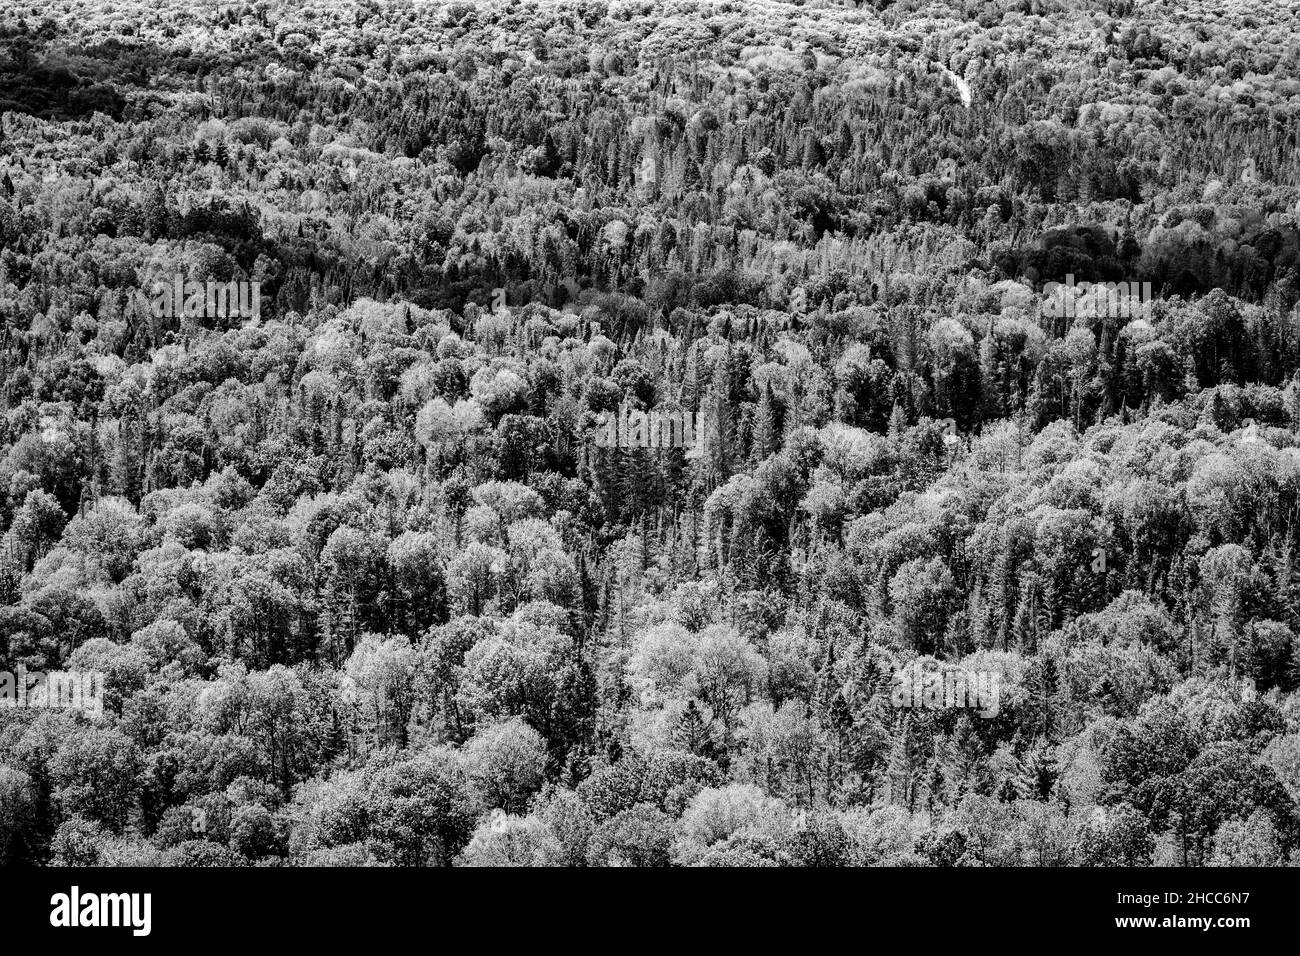 Immagine in scala di grigi di una foresta sempreverde Foto Stock